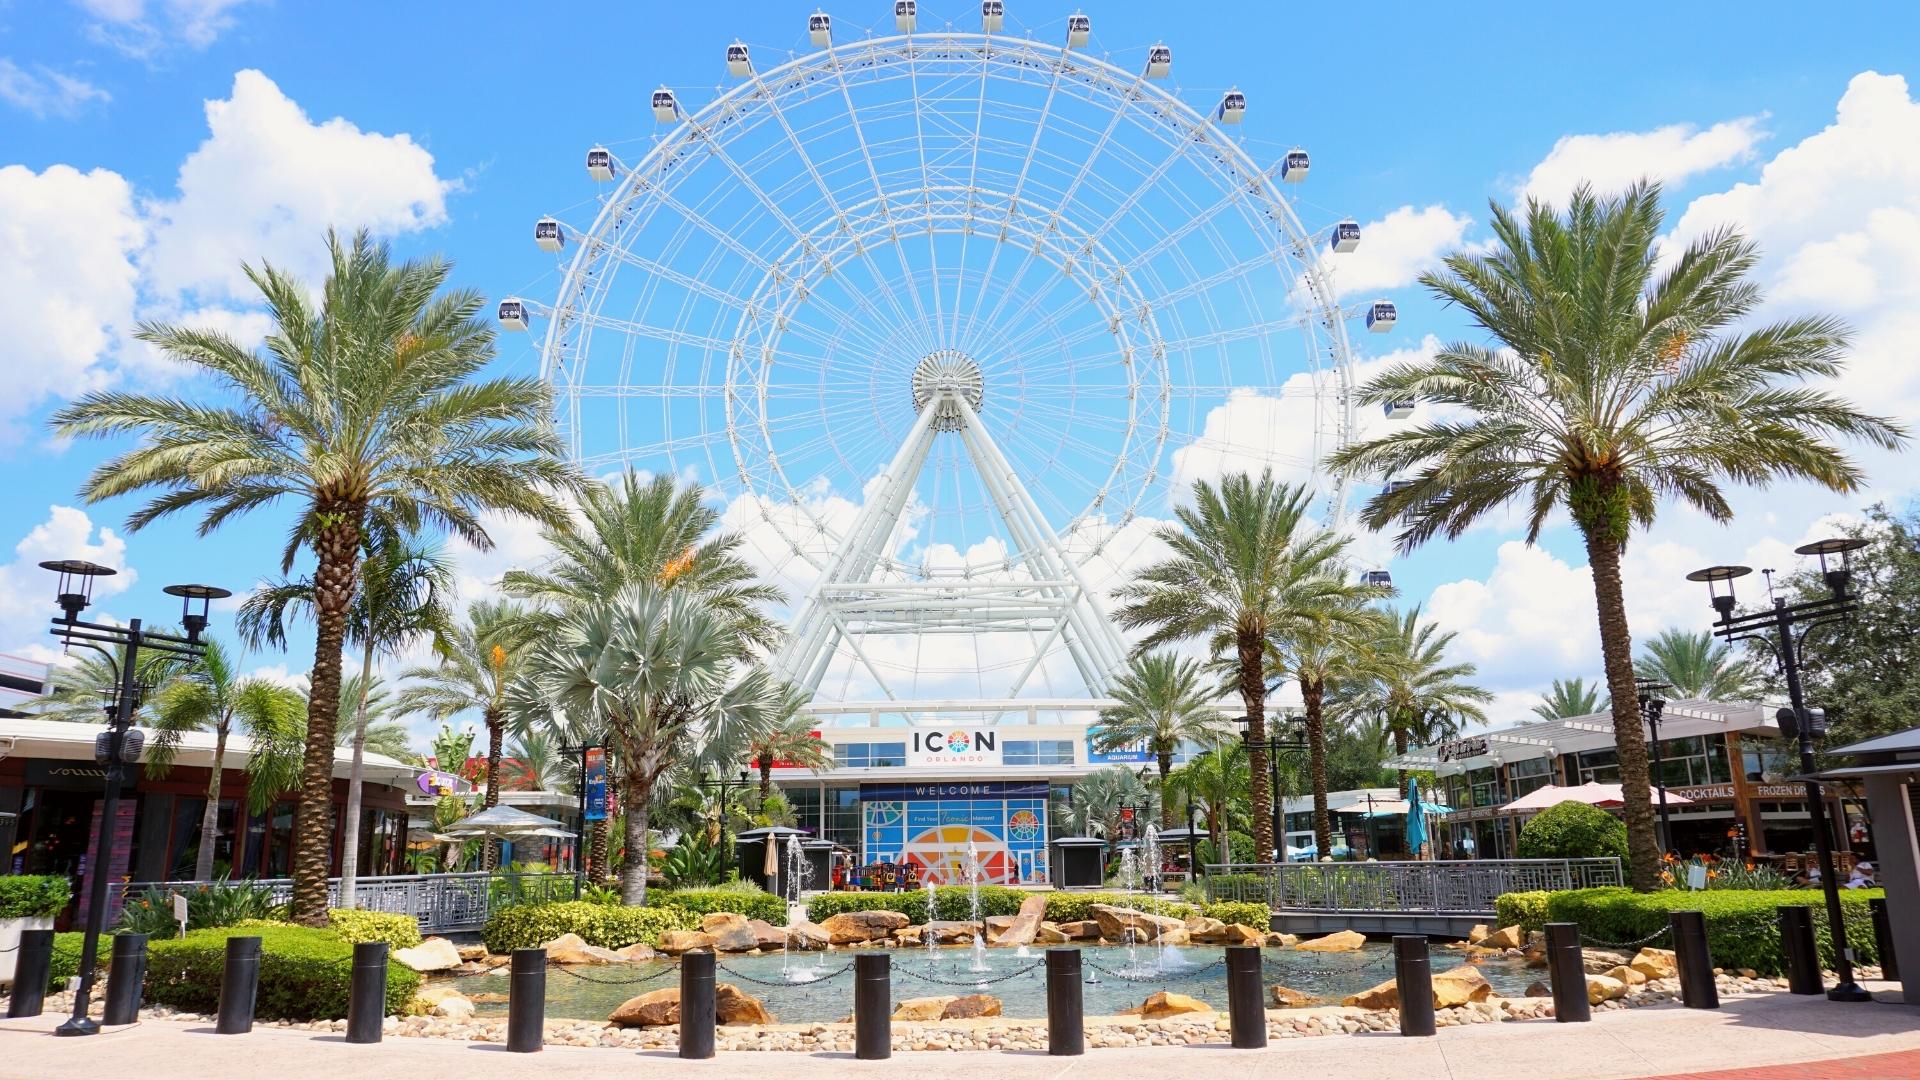 The Wheel in Orlando Florida